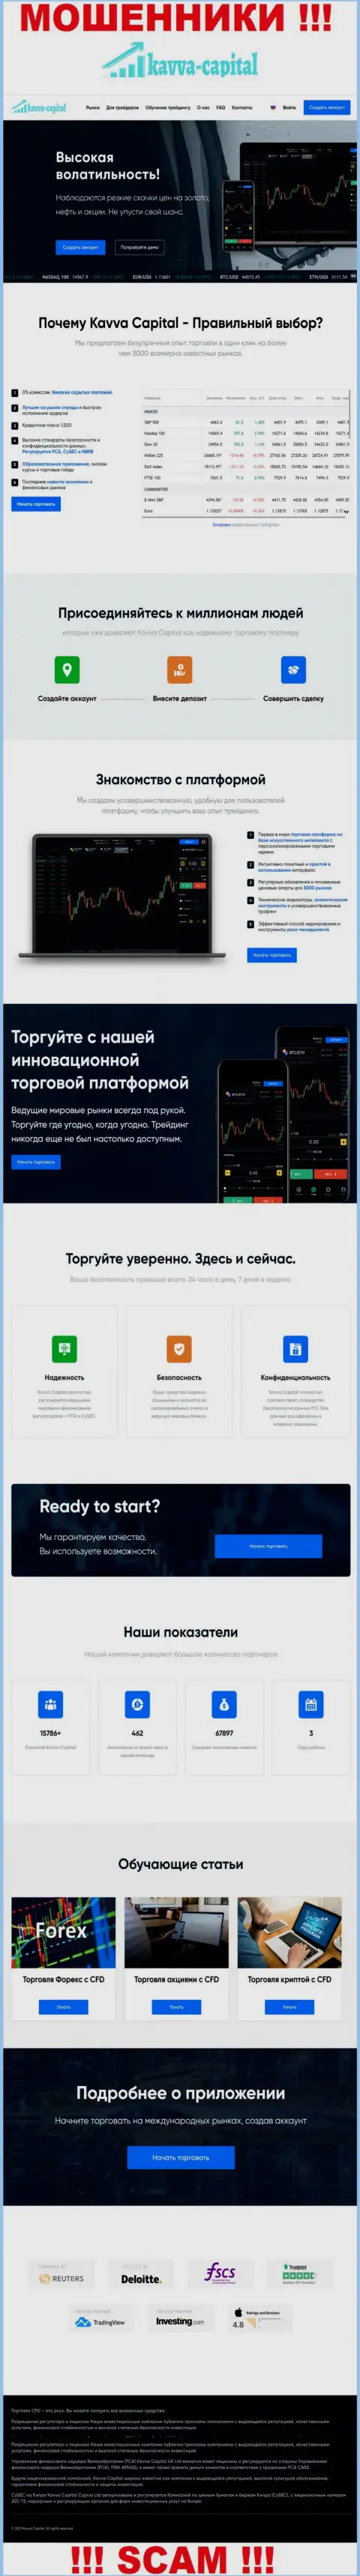 Официальный веб-портал мошенников Kavva Capital, забитый информацией для наивных людей